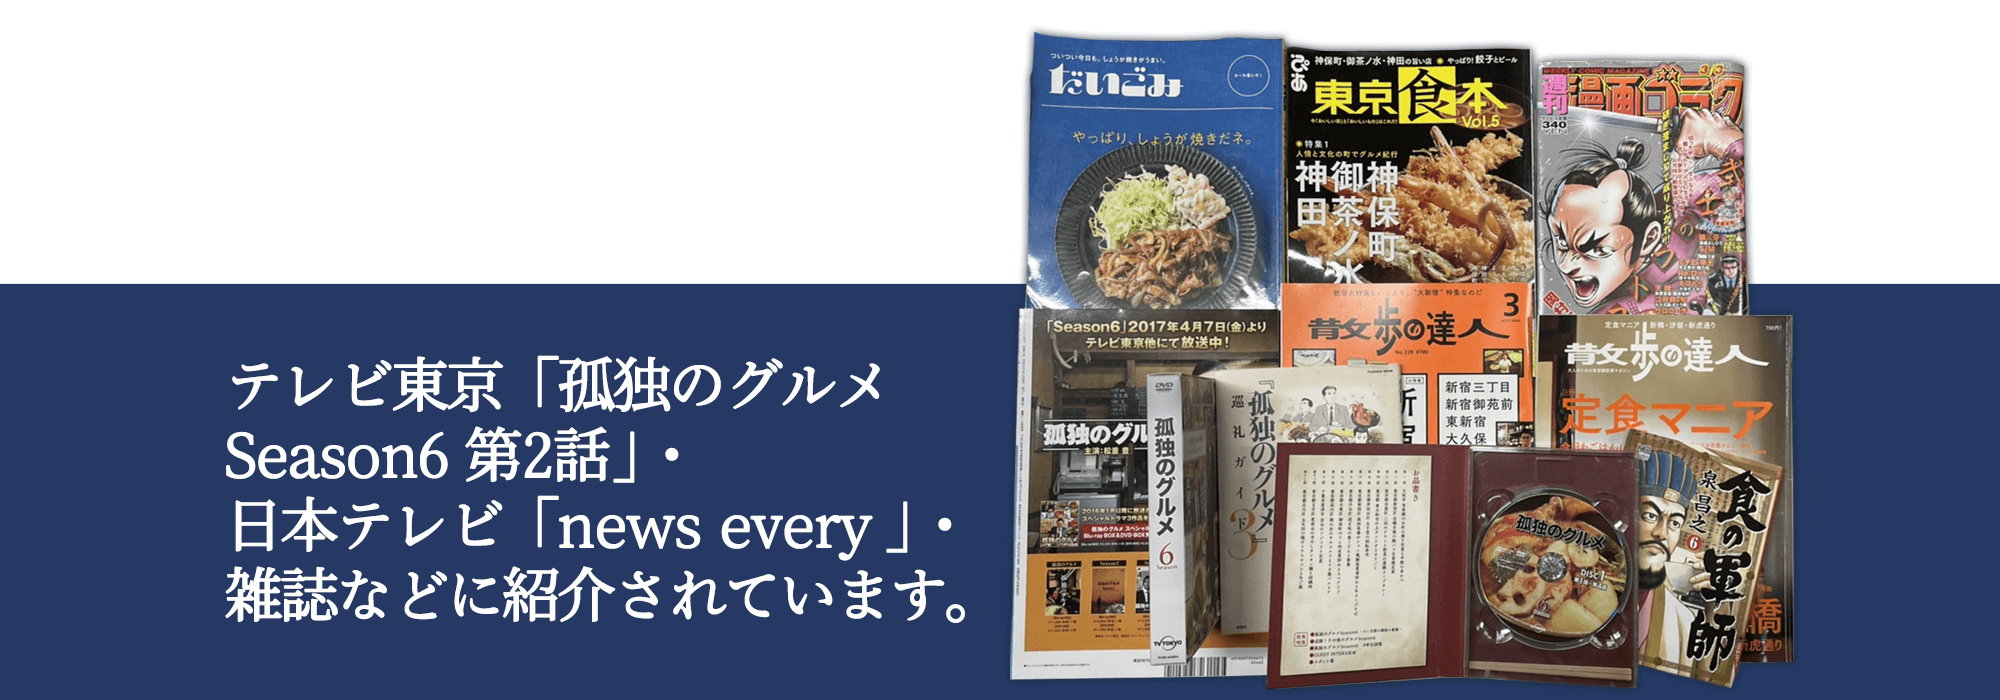 テレビ東京「孤独のグルメSeason6 第2話」・日本テレビ「news every 」・雑誌などに紹介されています。